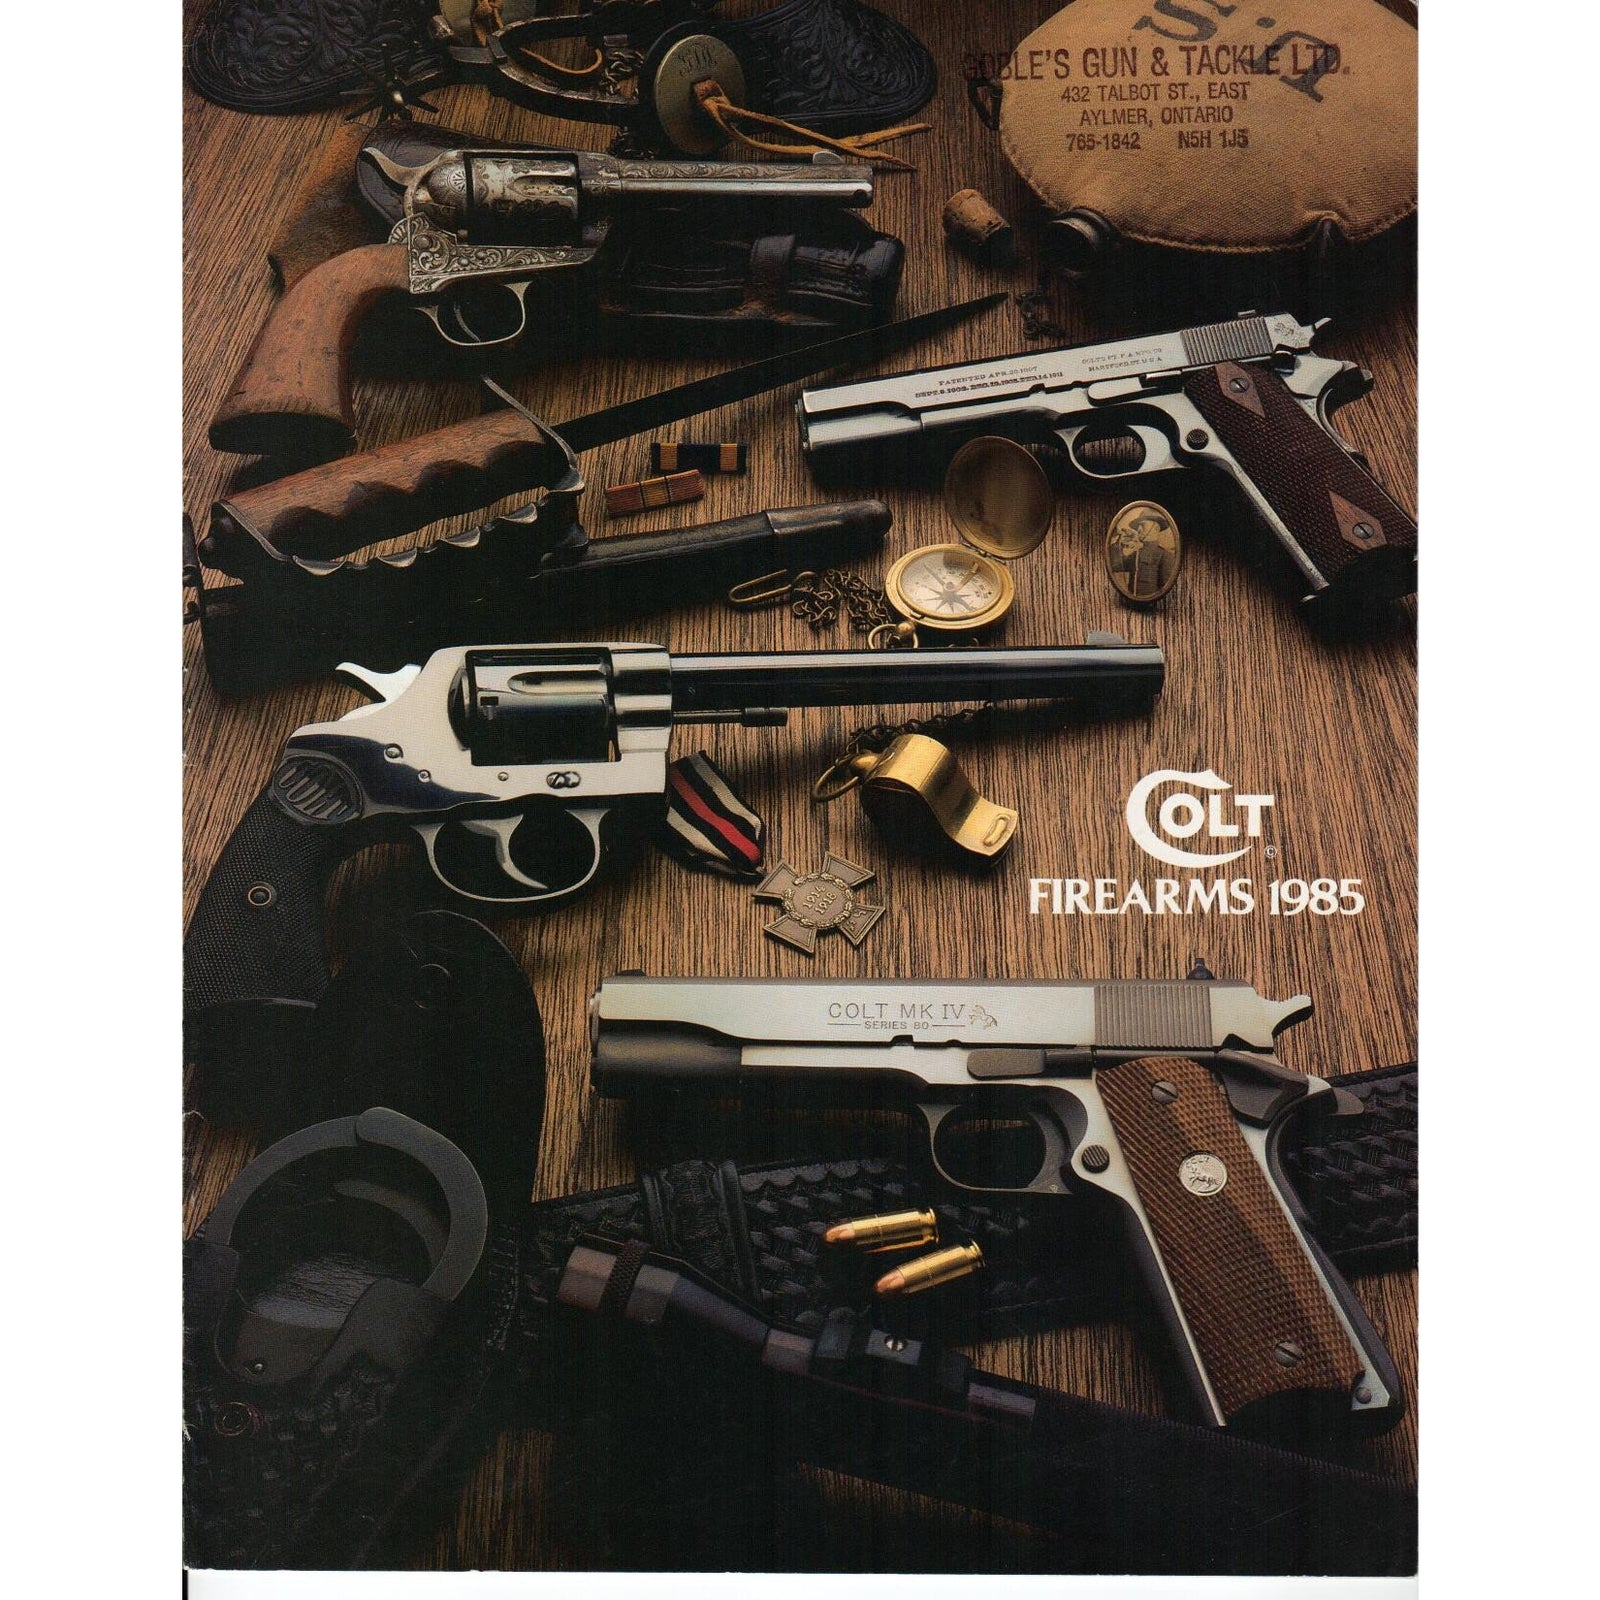 Colt Firearms 1985 Catalogue